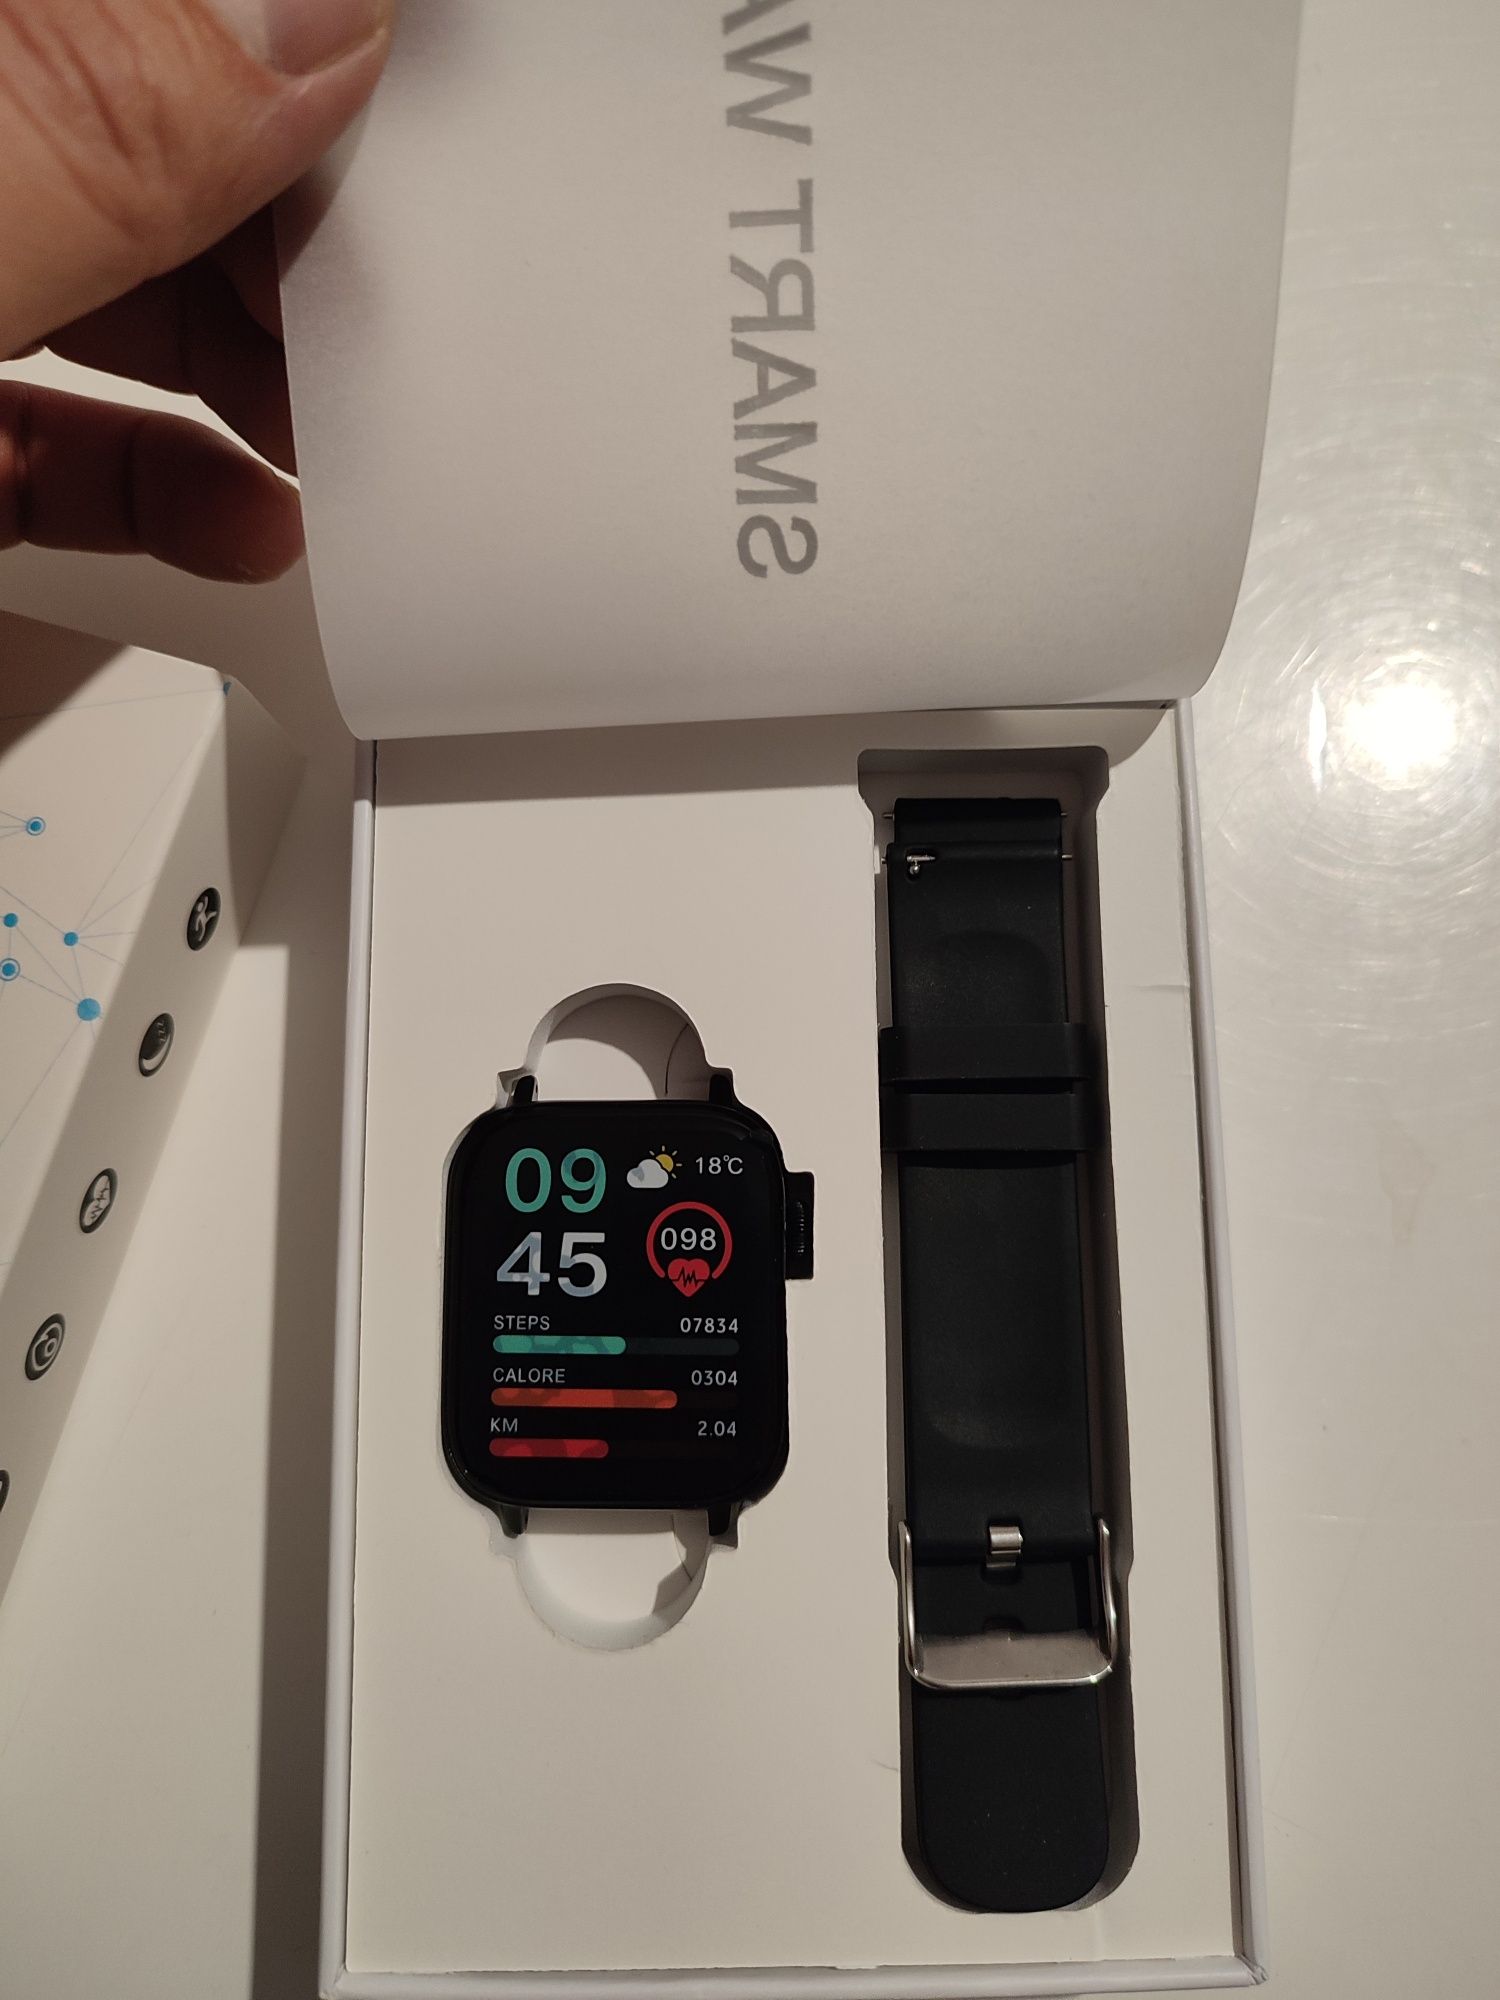 Nowy Smart watch